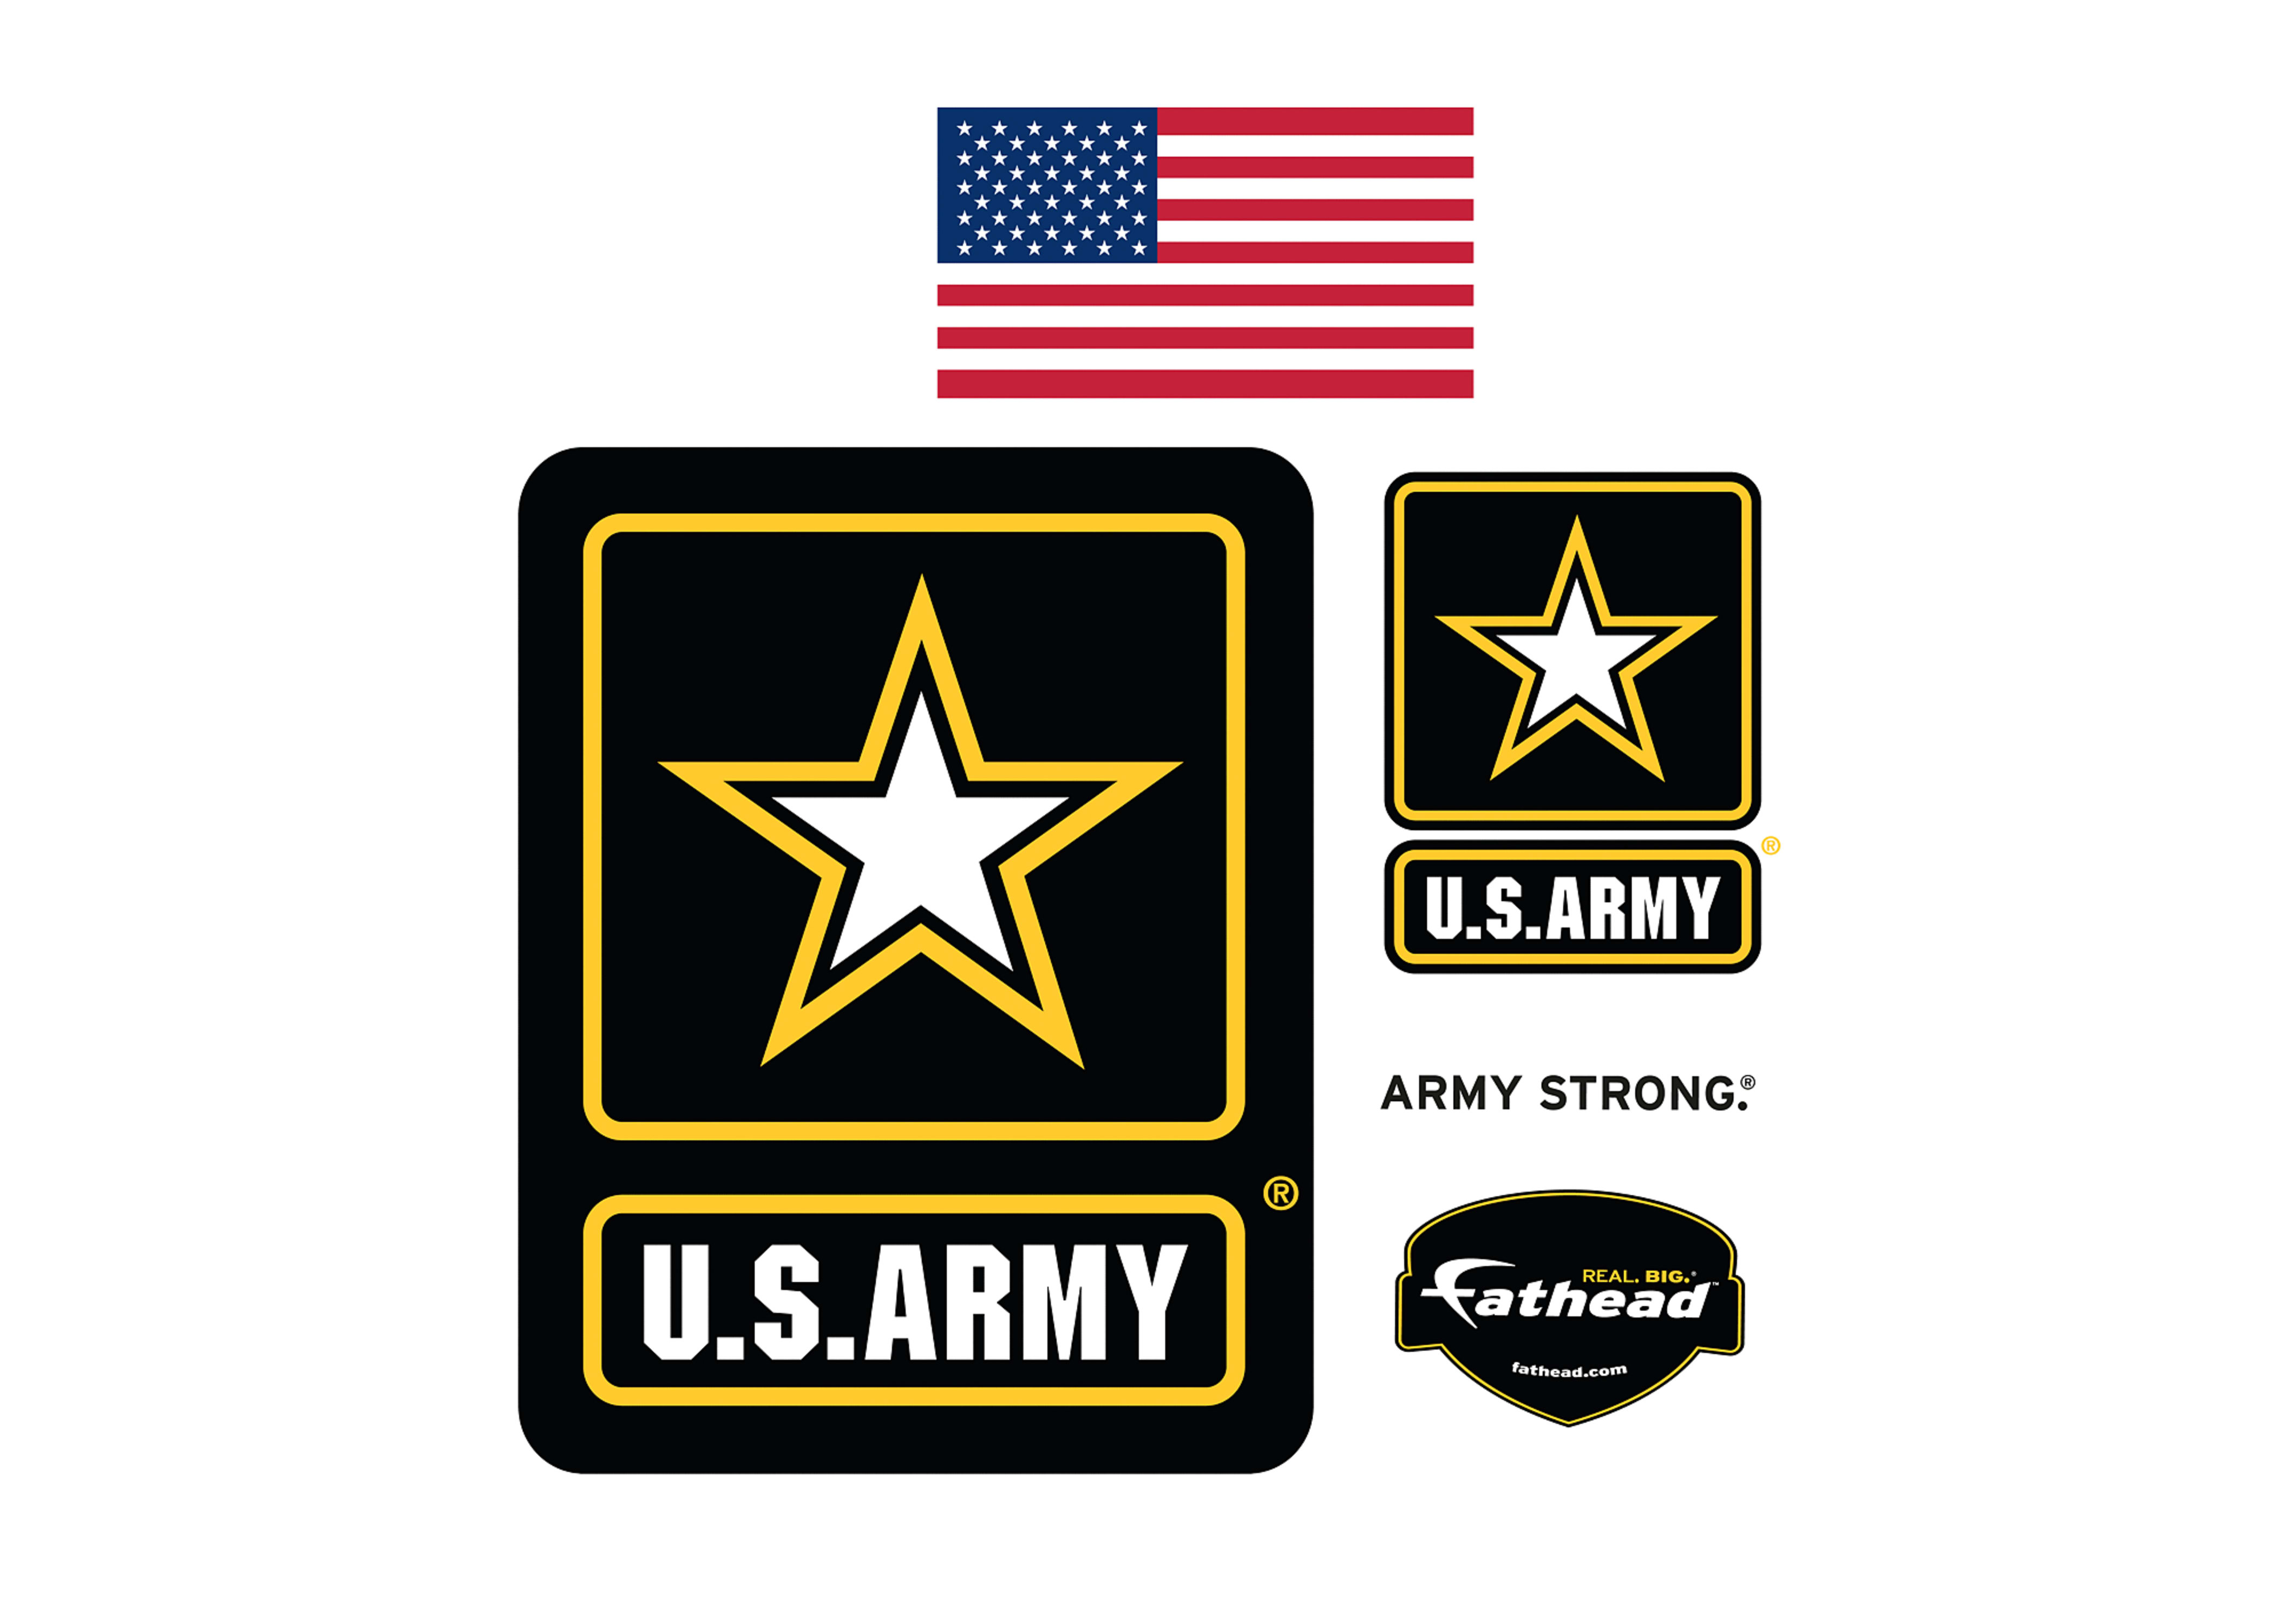 Army logo wall decal shop fathead for decor jpg